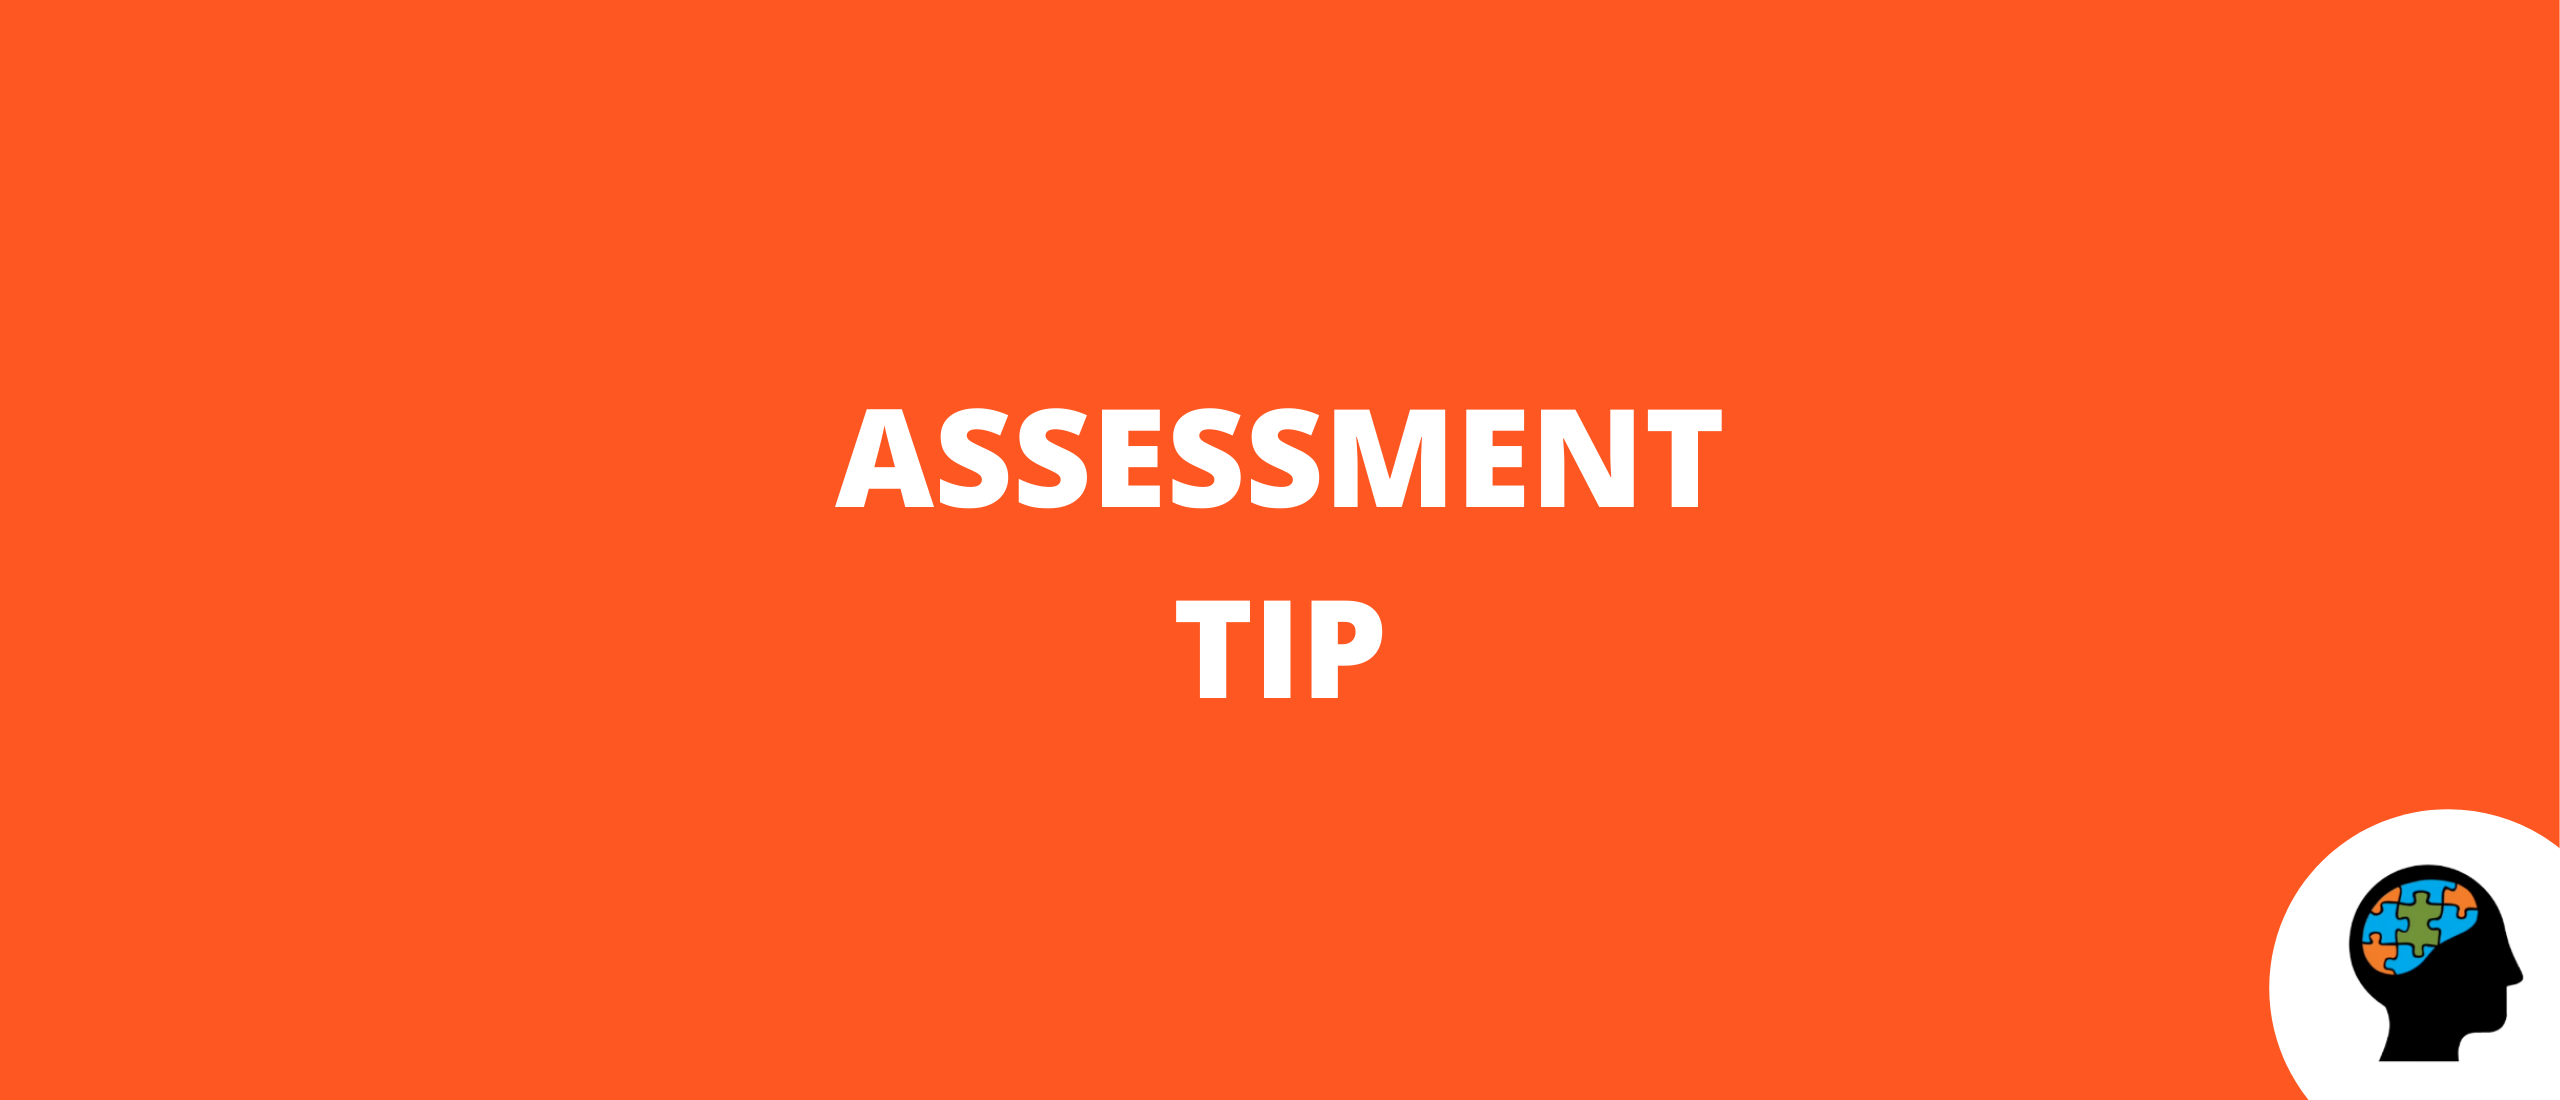 Assessment tip